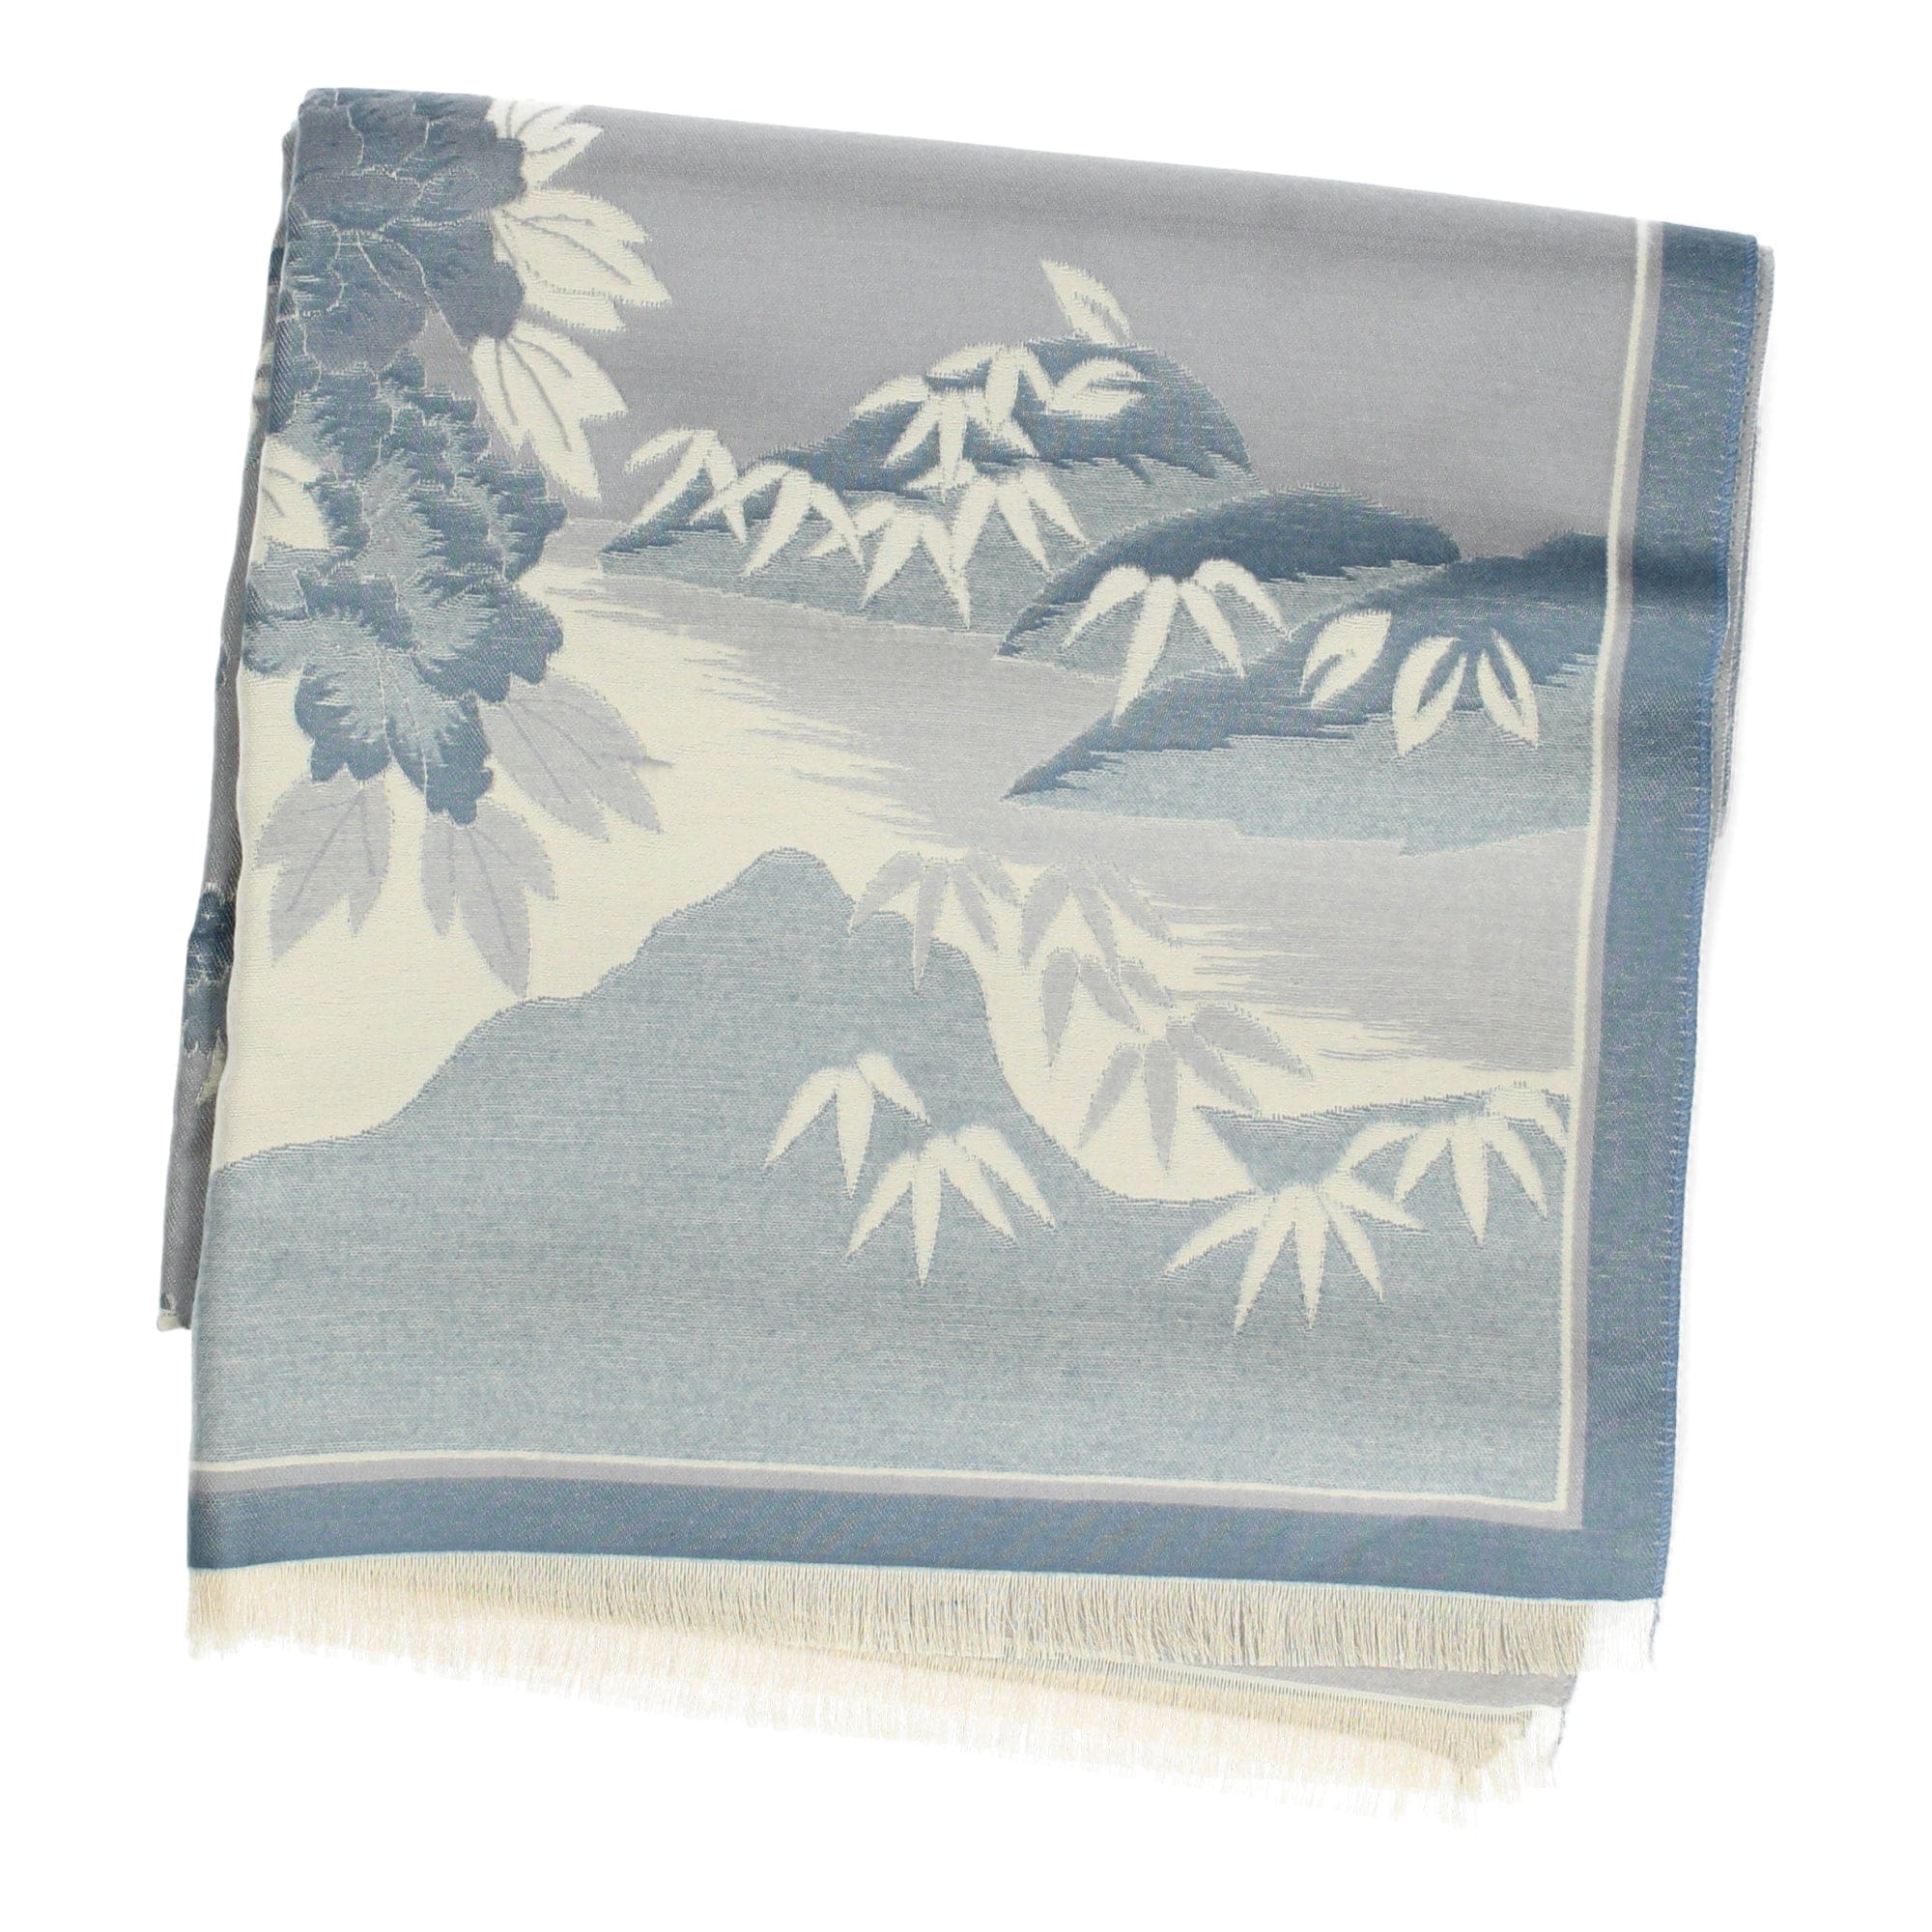 Bamboo scarf - shawl